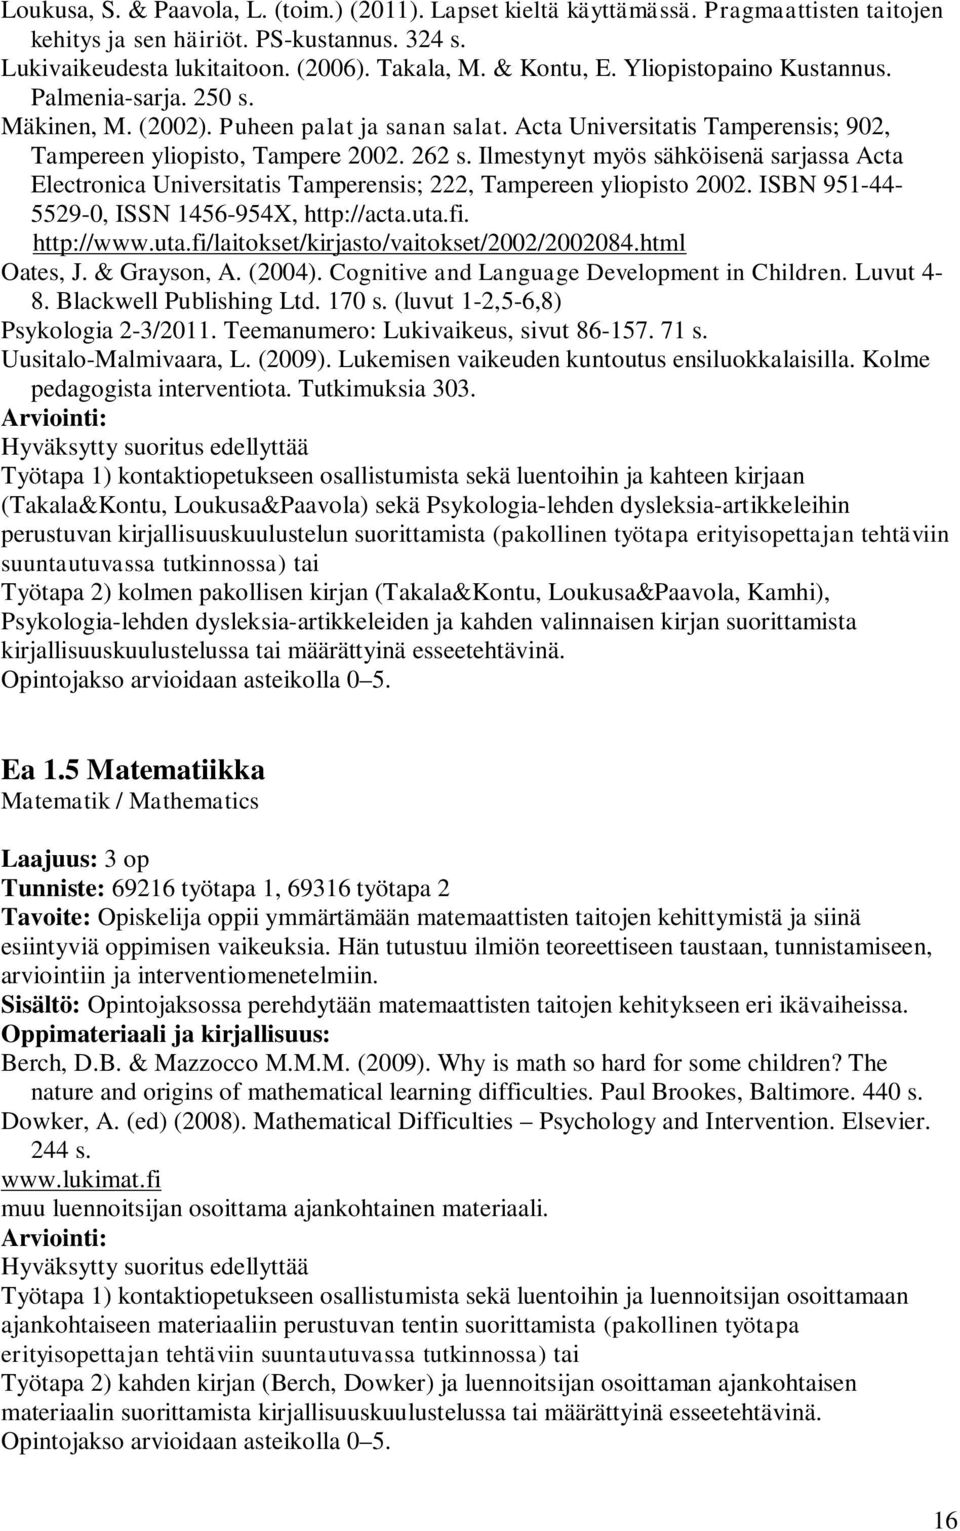 Ilmestynyt myös sähköisenä sarjassa Acta Electronica Universitatis Tamperensis; 222, Tampereen yliopisto 2002. ISBN 951-44- 5529-0, ISSN 1456-954X, http://acta.uta.